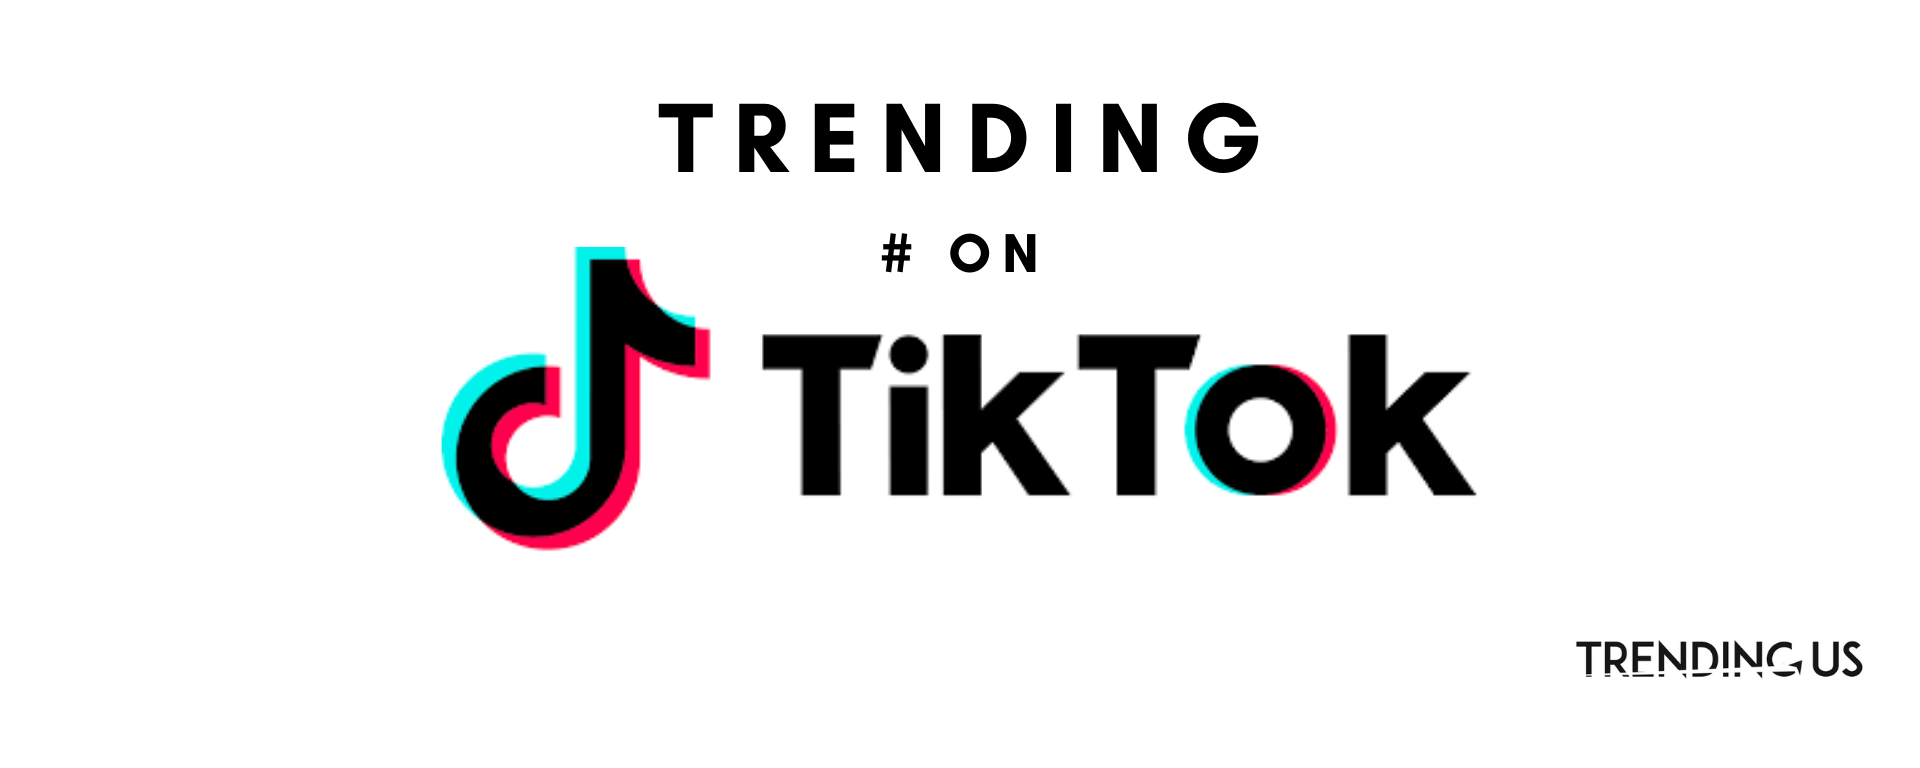 100+ Trending Tiktok Hashtags 2020 » Trending Us